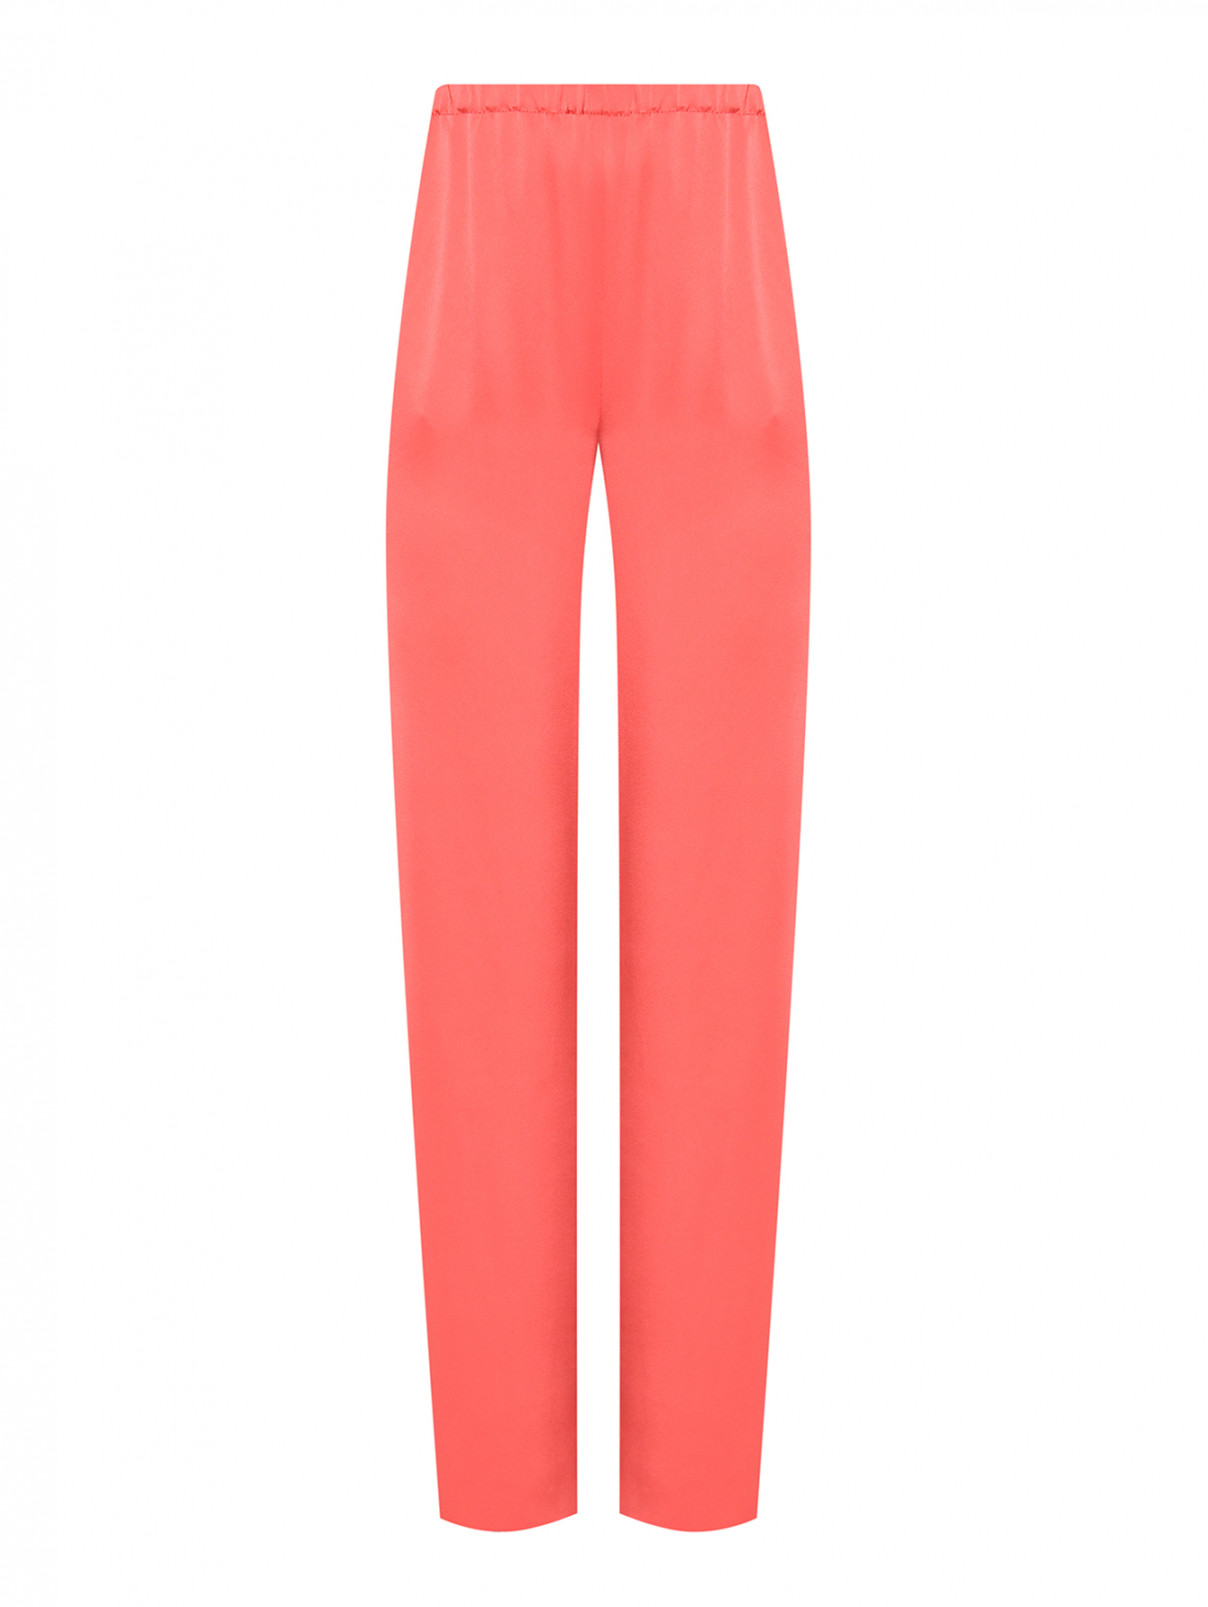 Однотонные брюки на резинке Marina Rinaldi  –  Общий вид  – Цвет:  Оранжевый